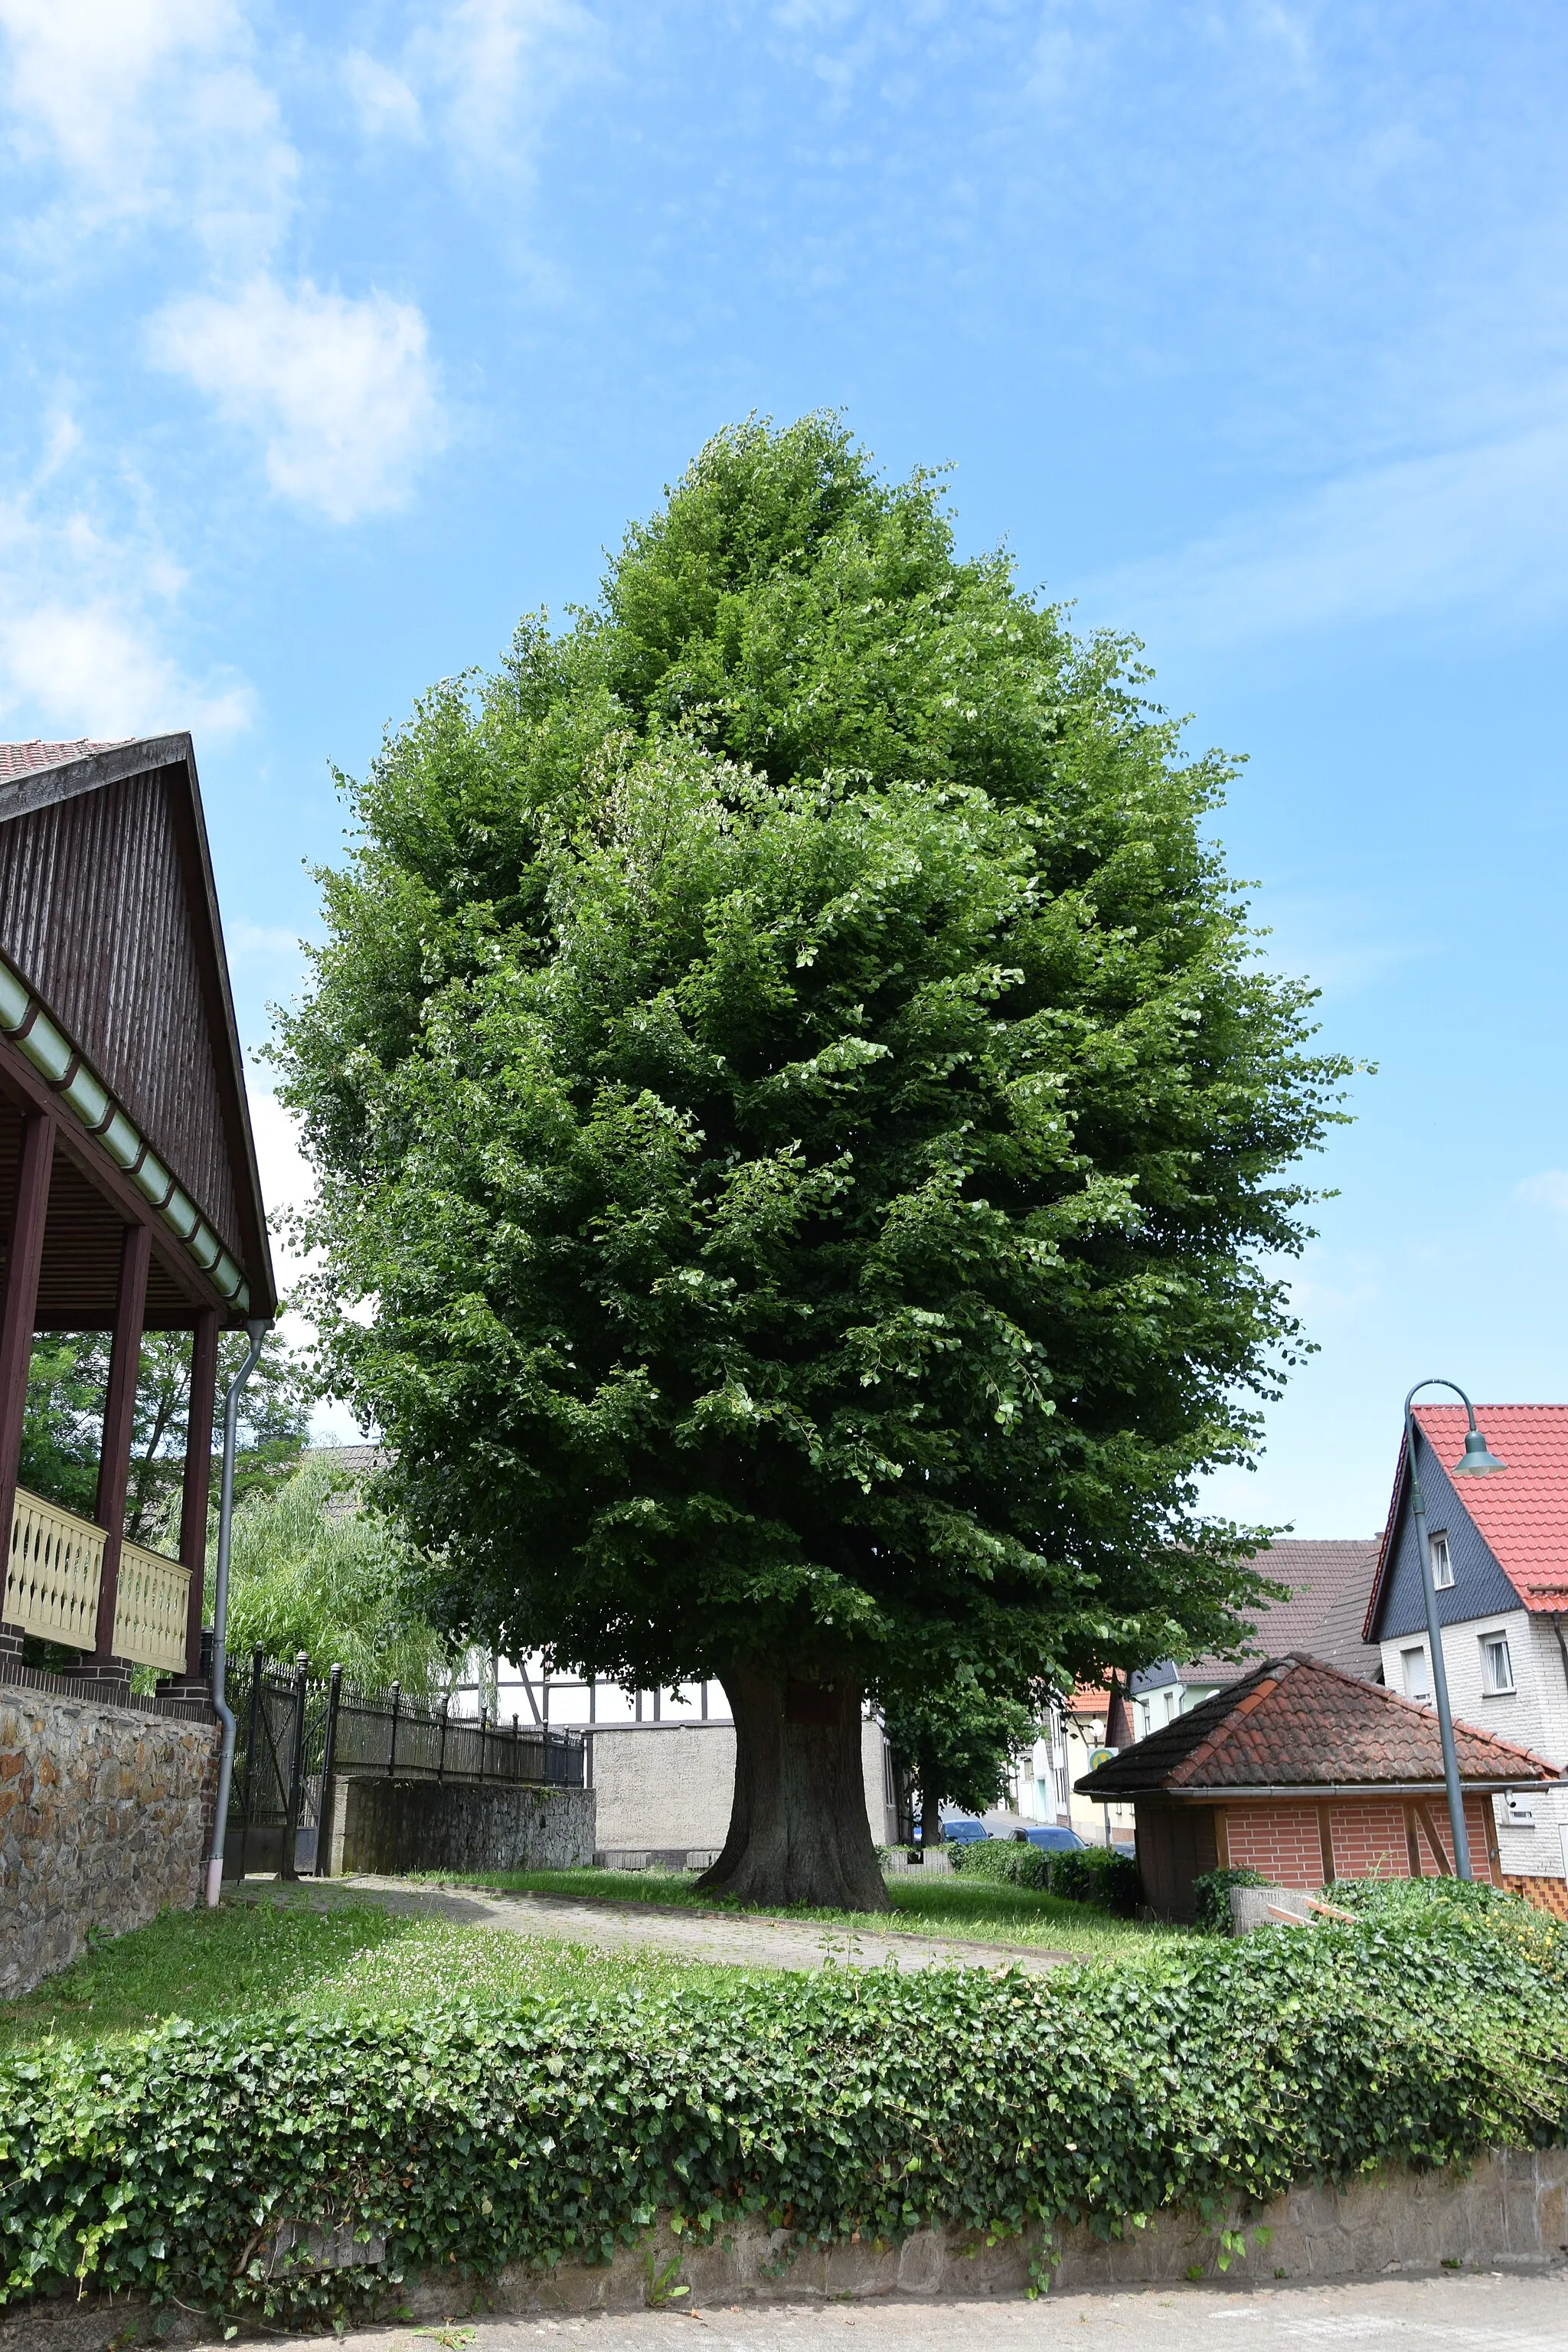 Photo showing: Schwenda, Dorflinde mit angebrachter Tafel:
Im September 1797 ließ der Dorfschulze Johann Michael Großstück diesen Lindenbaum auf dem Dorfplatz pflanzen.